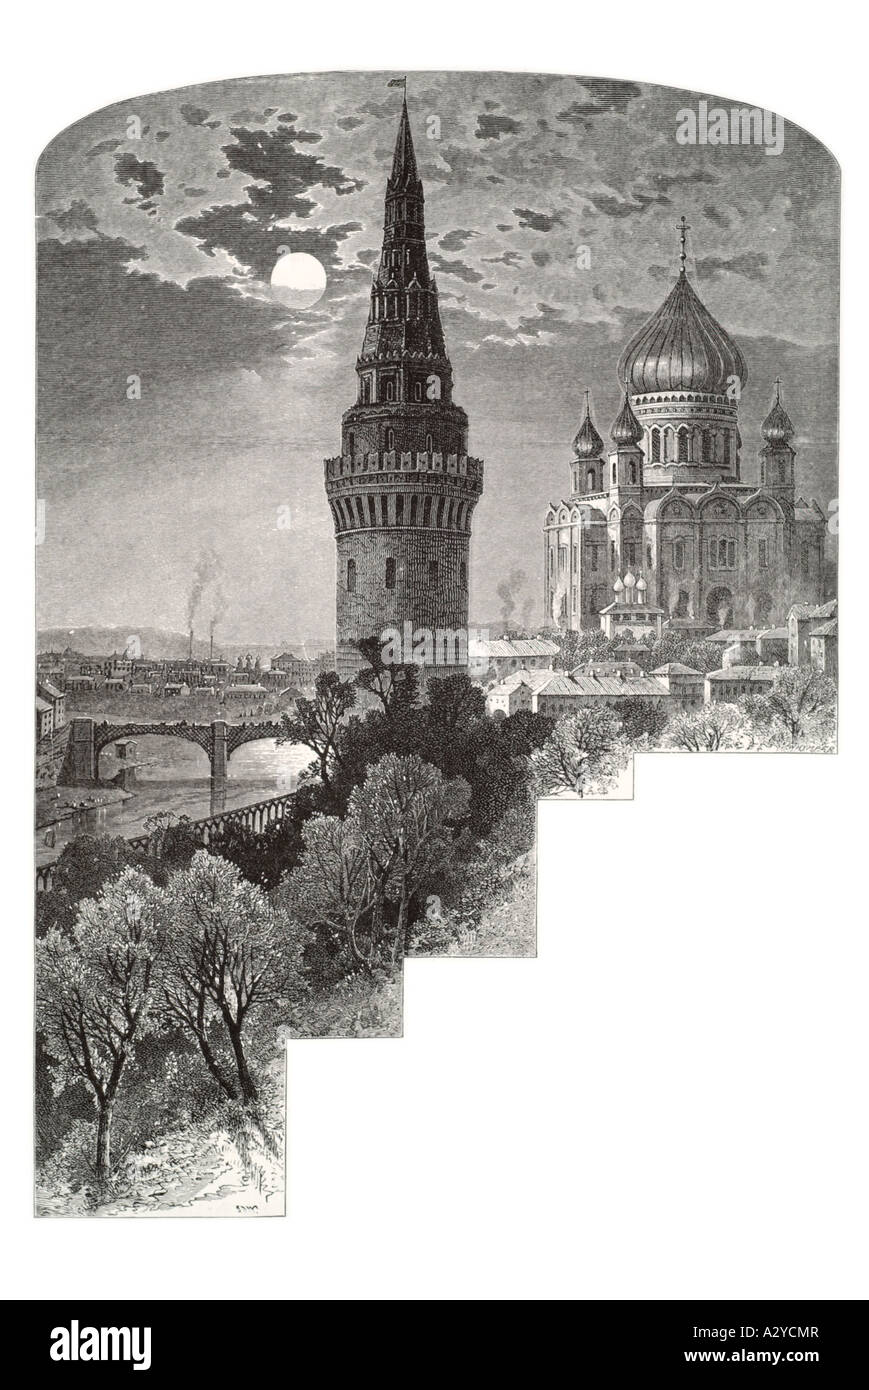 San Basilio st russo Russia Unione Sovietica Unione Sovietica luna cristiano ortodosso di ponte sul fiume Moskva Spassky round al chiaro di luna Foto Stock